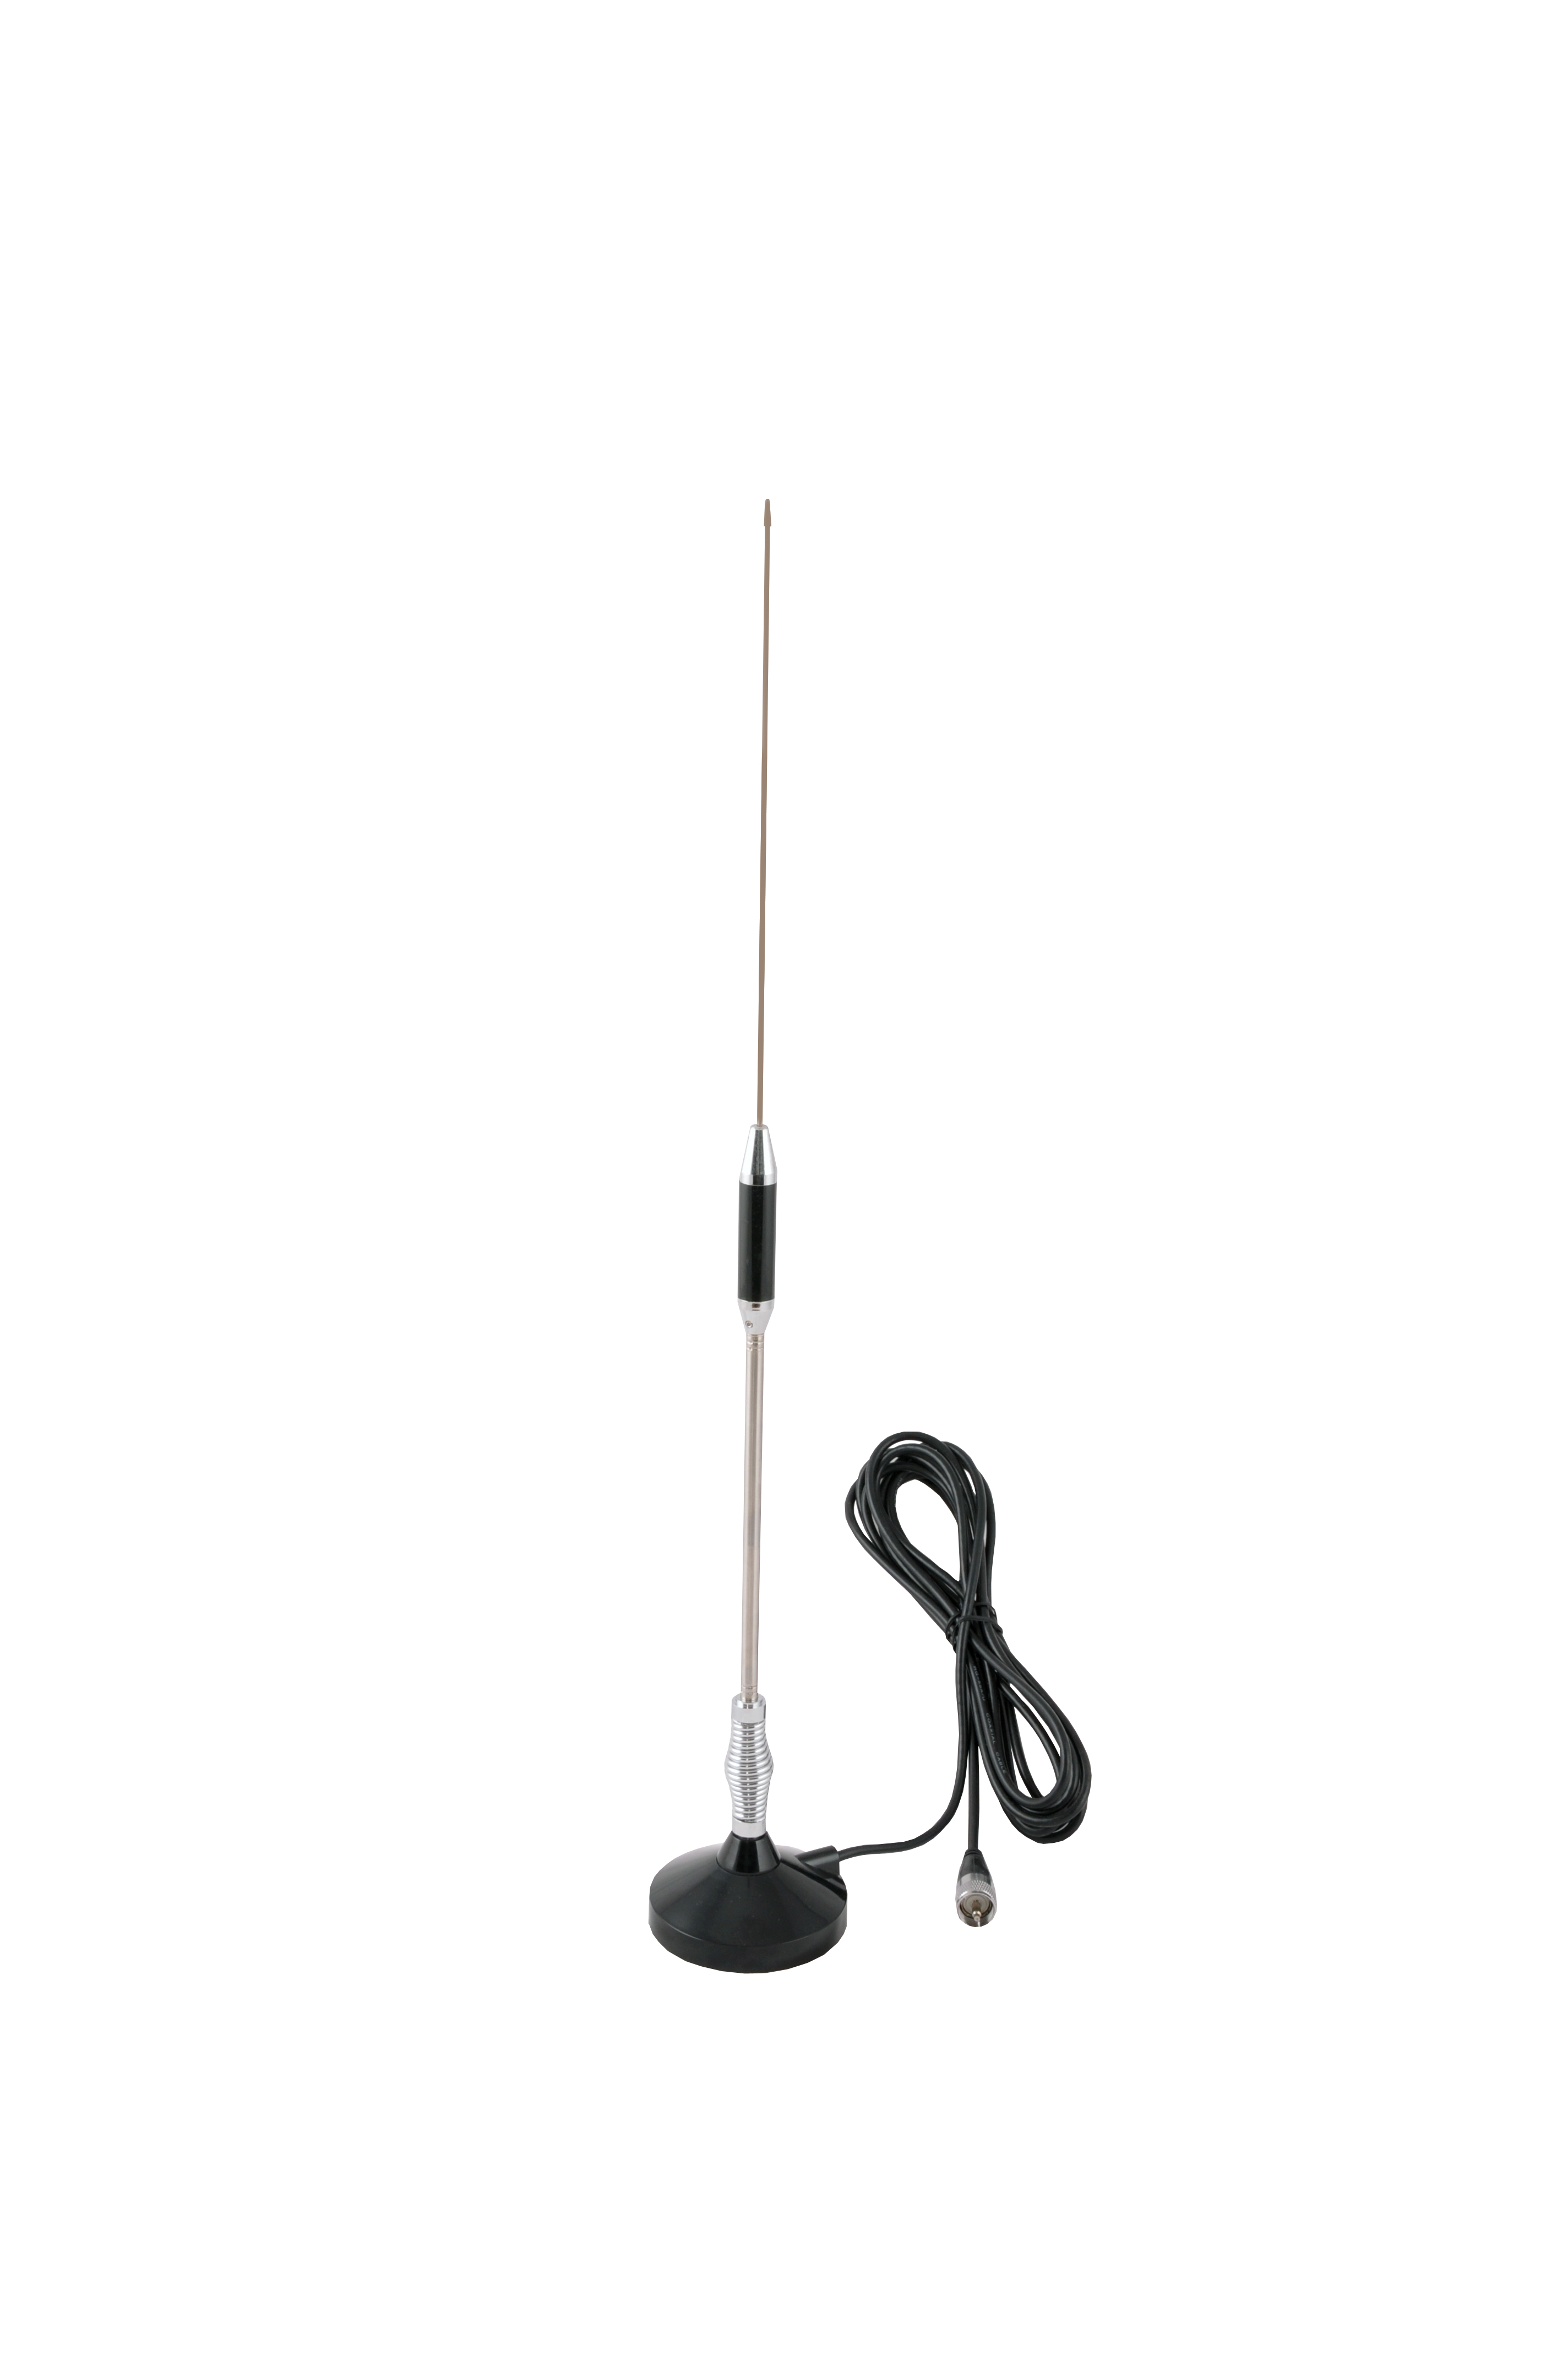 Antene și suporturi de fixare pentru antene - Antenă auto pentru stații radio CBM Albrecht 108, fomcoshop.ro